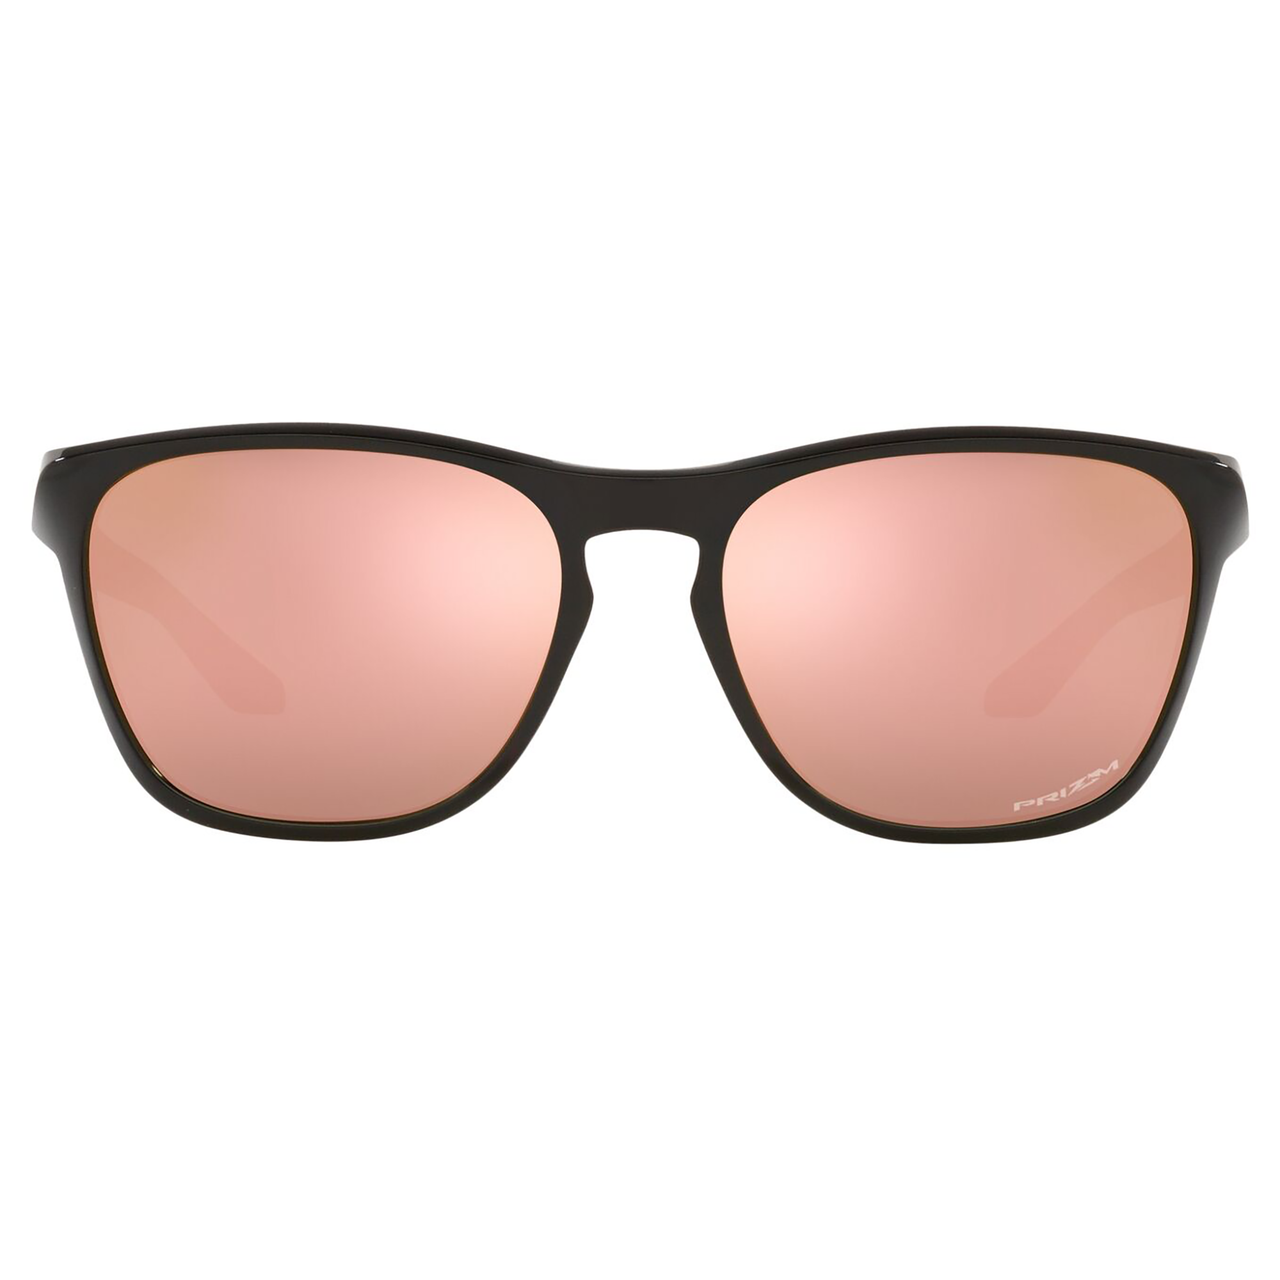 Oakley Manorburn Sunglasses (Polished Black) Prizm Rose Gold Lens